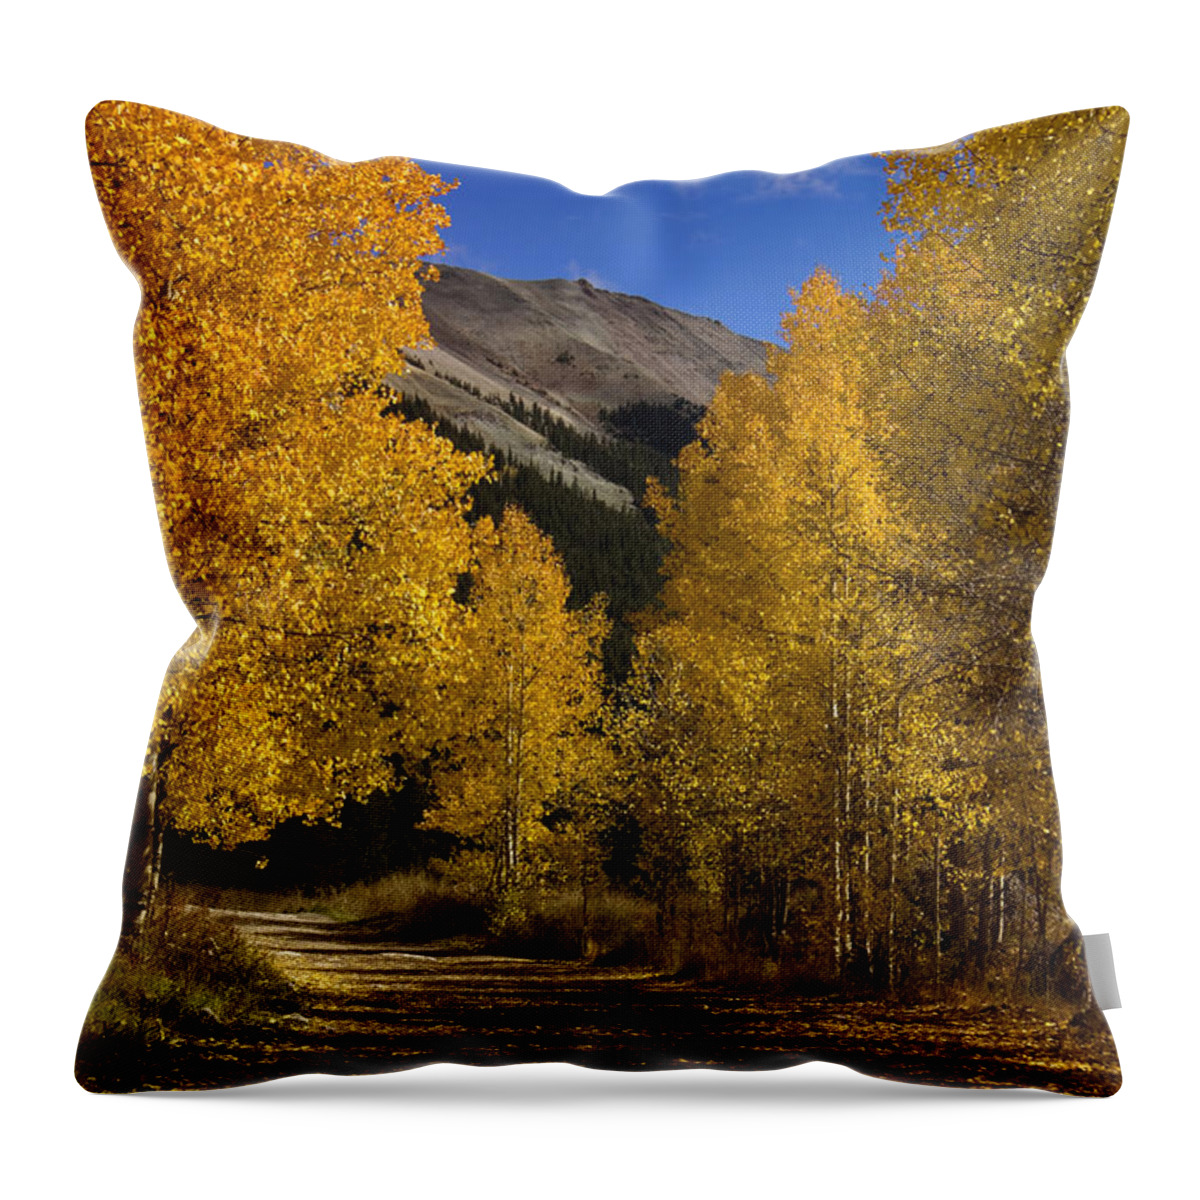 Colorado Throw Pillow featuring the photograph Follow the Gold by Ellen Heaverlo